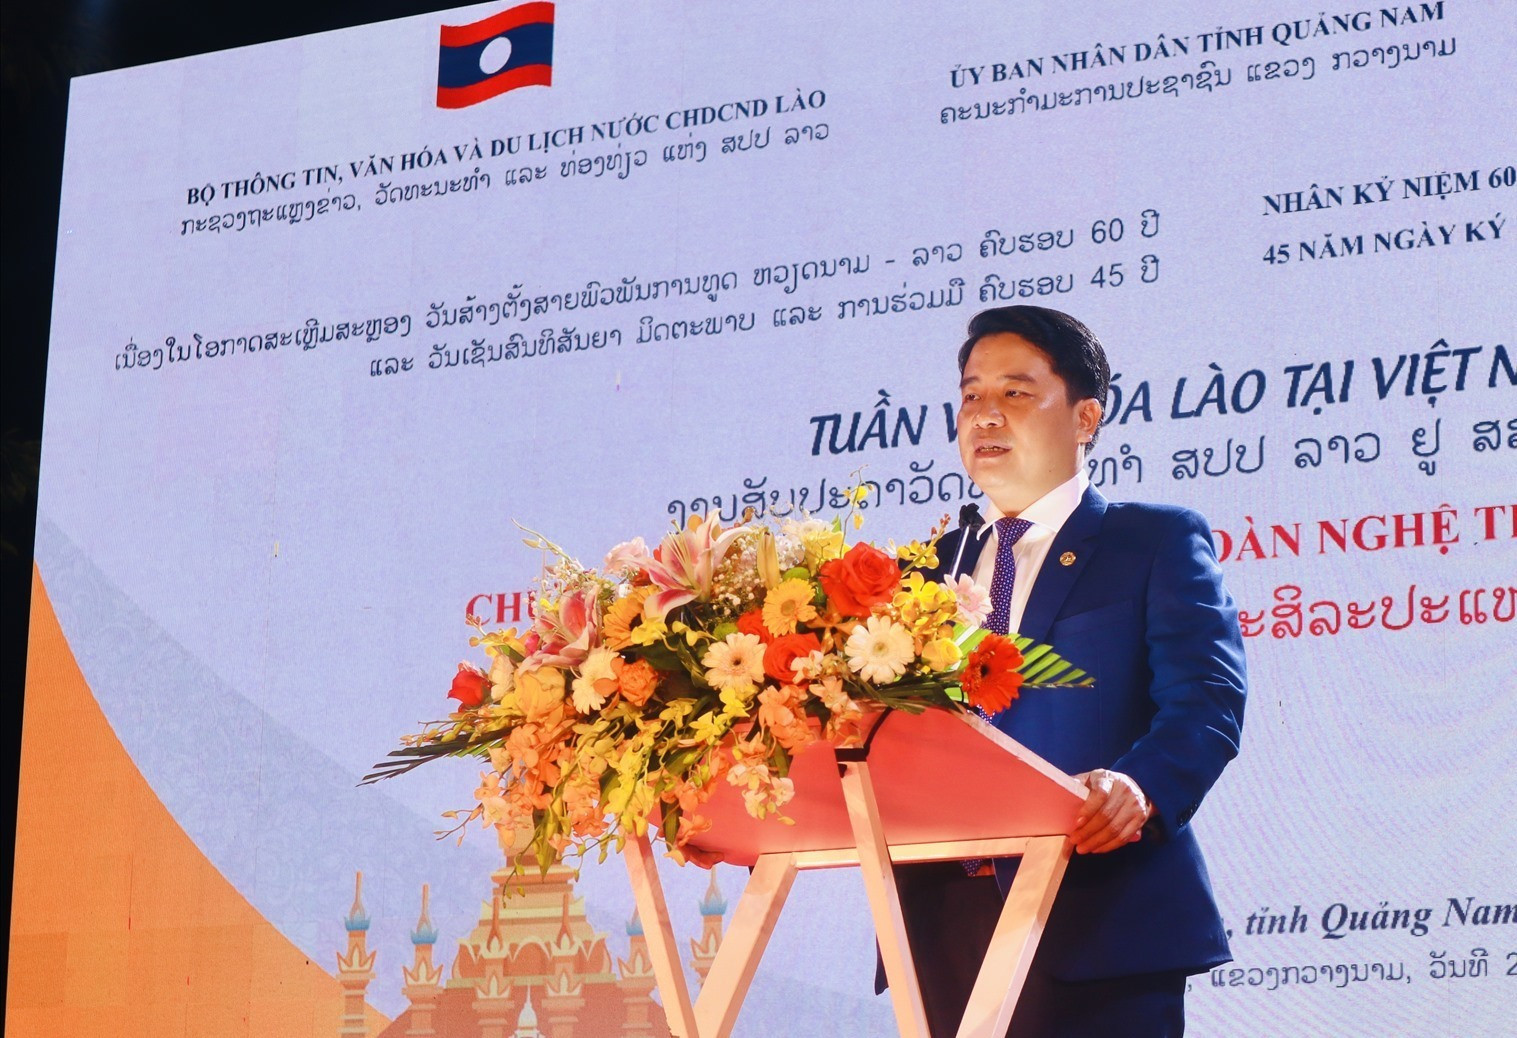 Phó Chủ tịch UBND tỉnh Trần Văn Tân phát biểu tại chương trình. Ảnh: Q.T